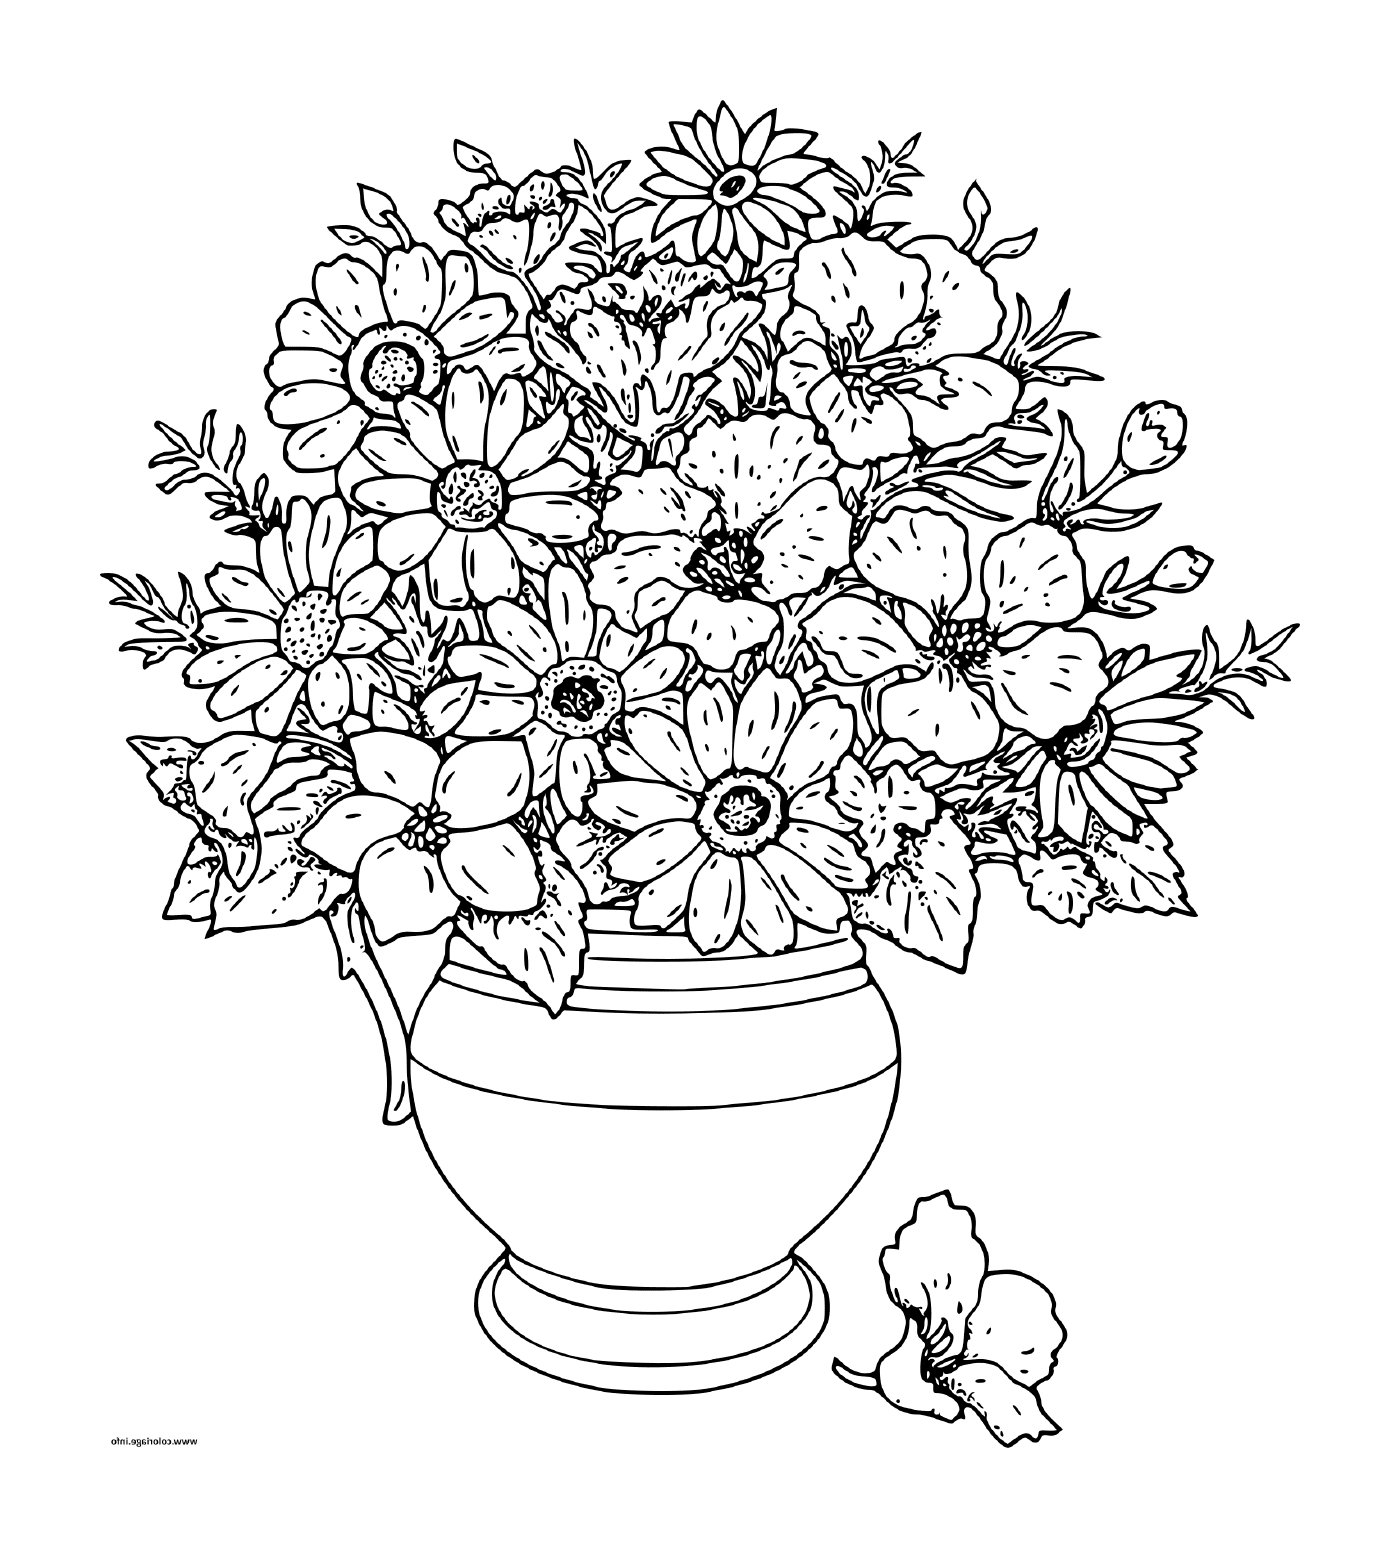  Ein Blumenstrauß in einer Vase 